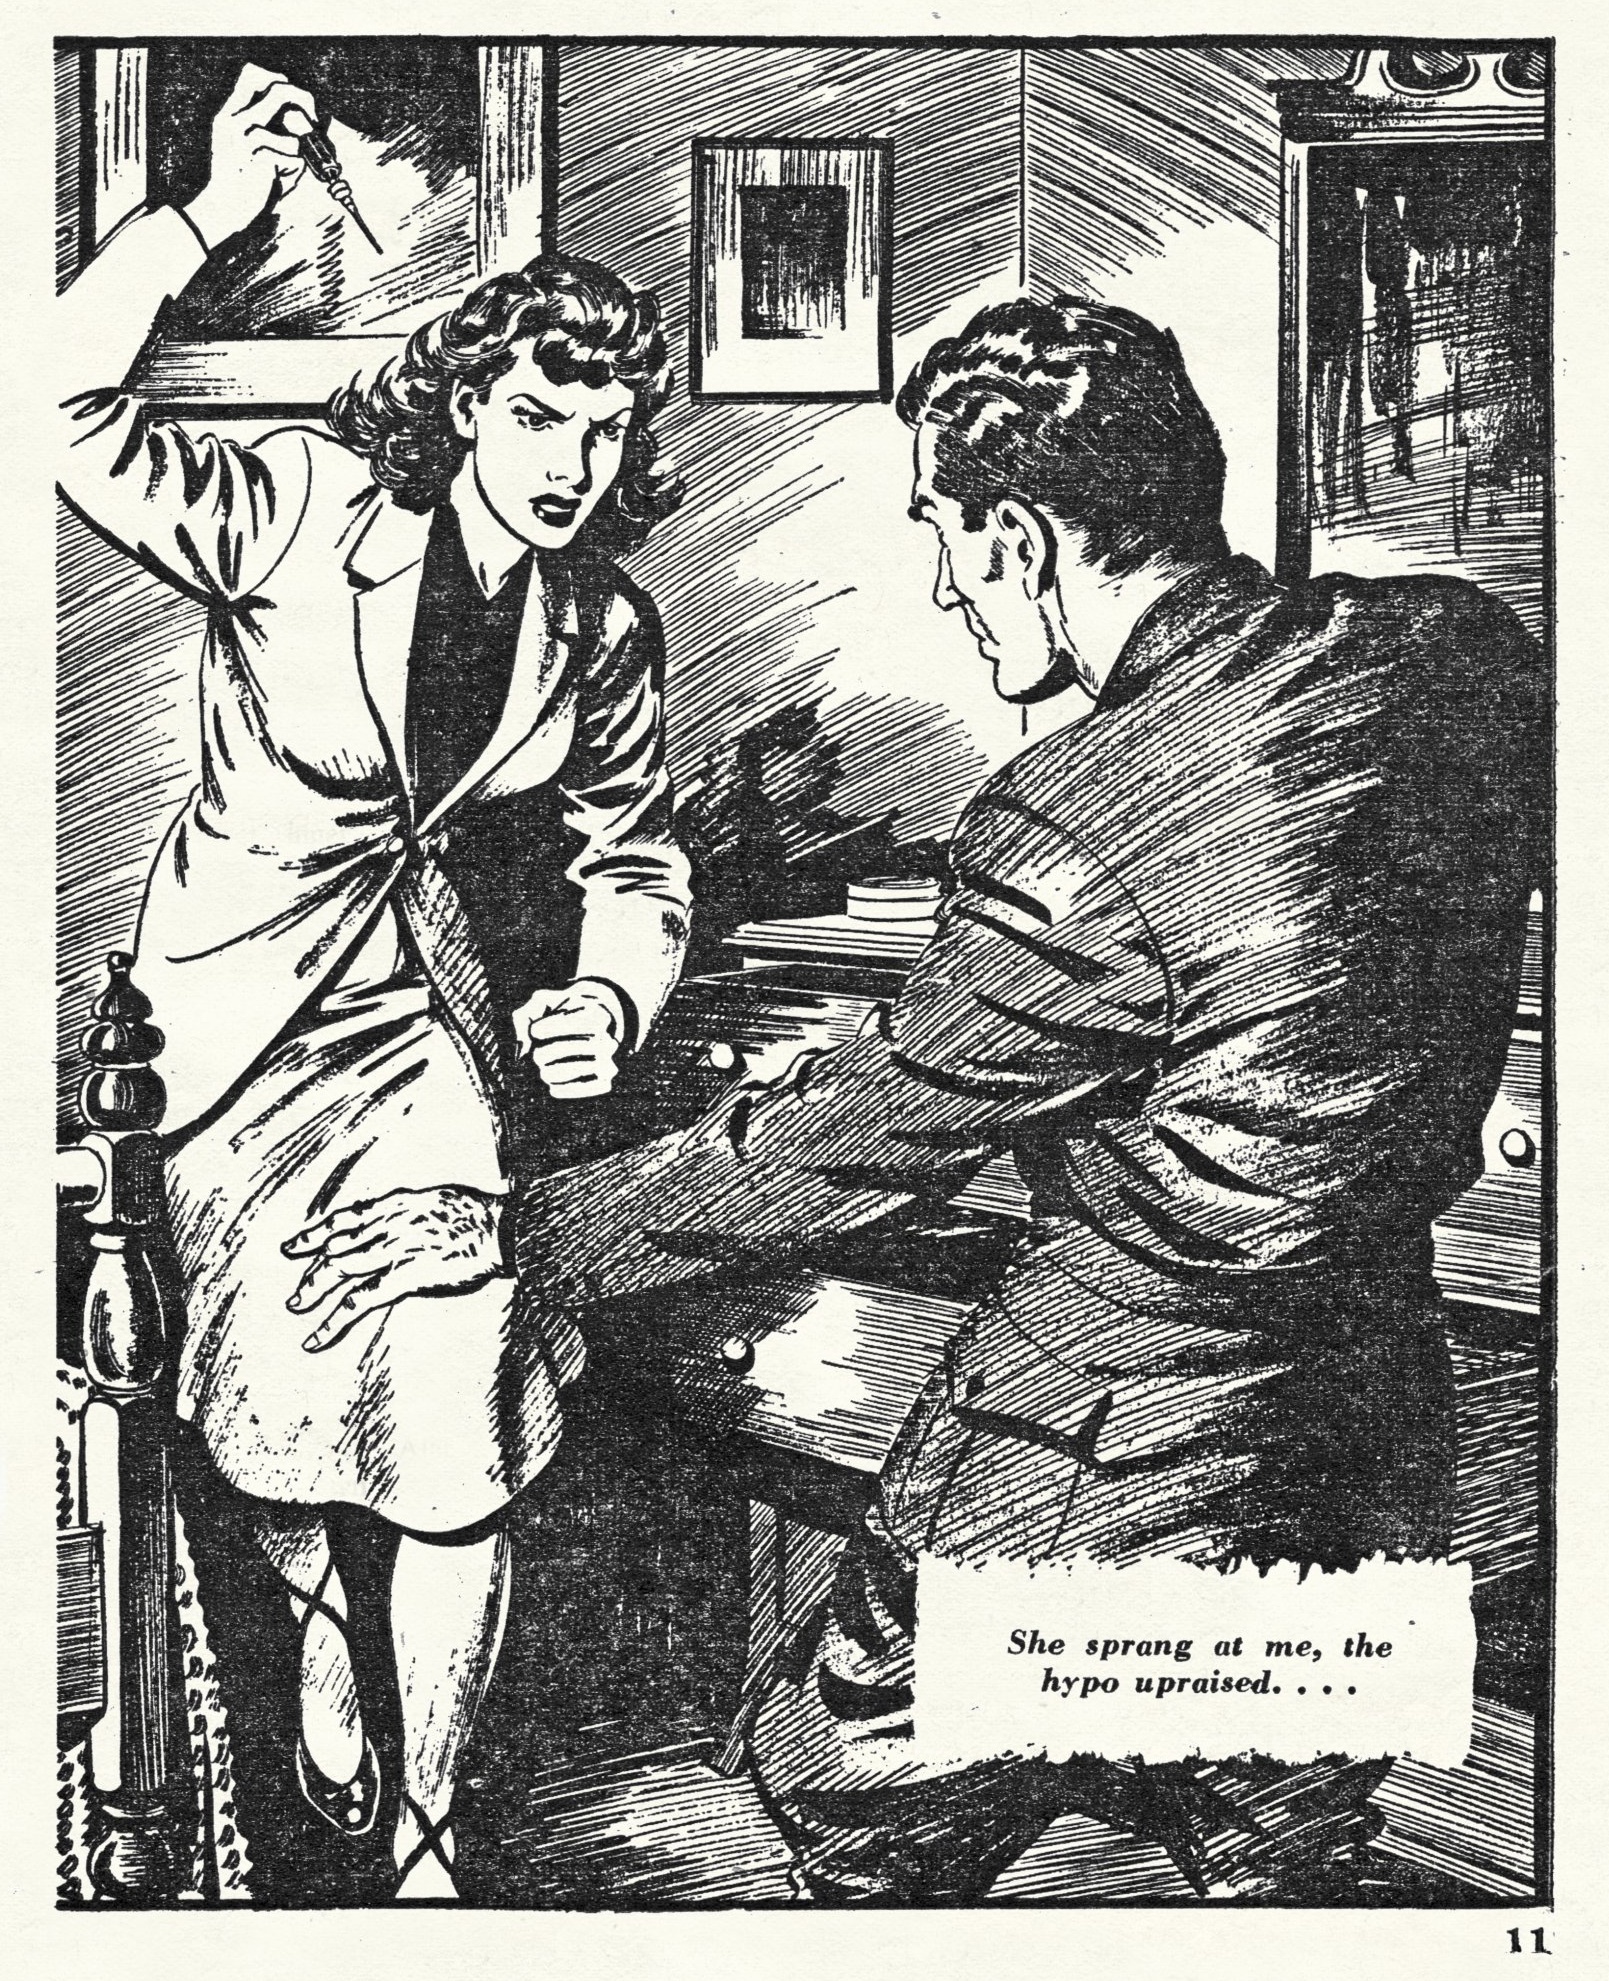 New Detective Magazine v14 n03 [1950-03] 0011